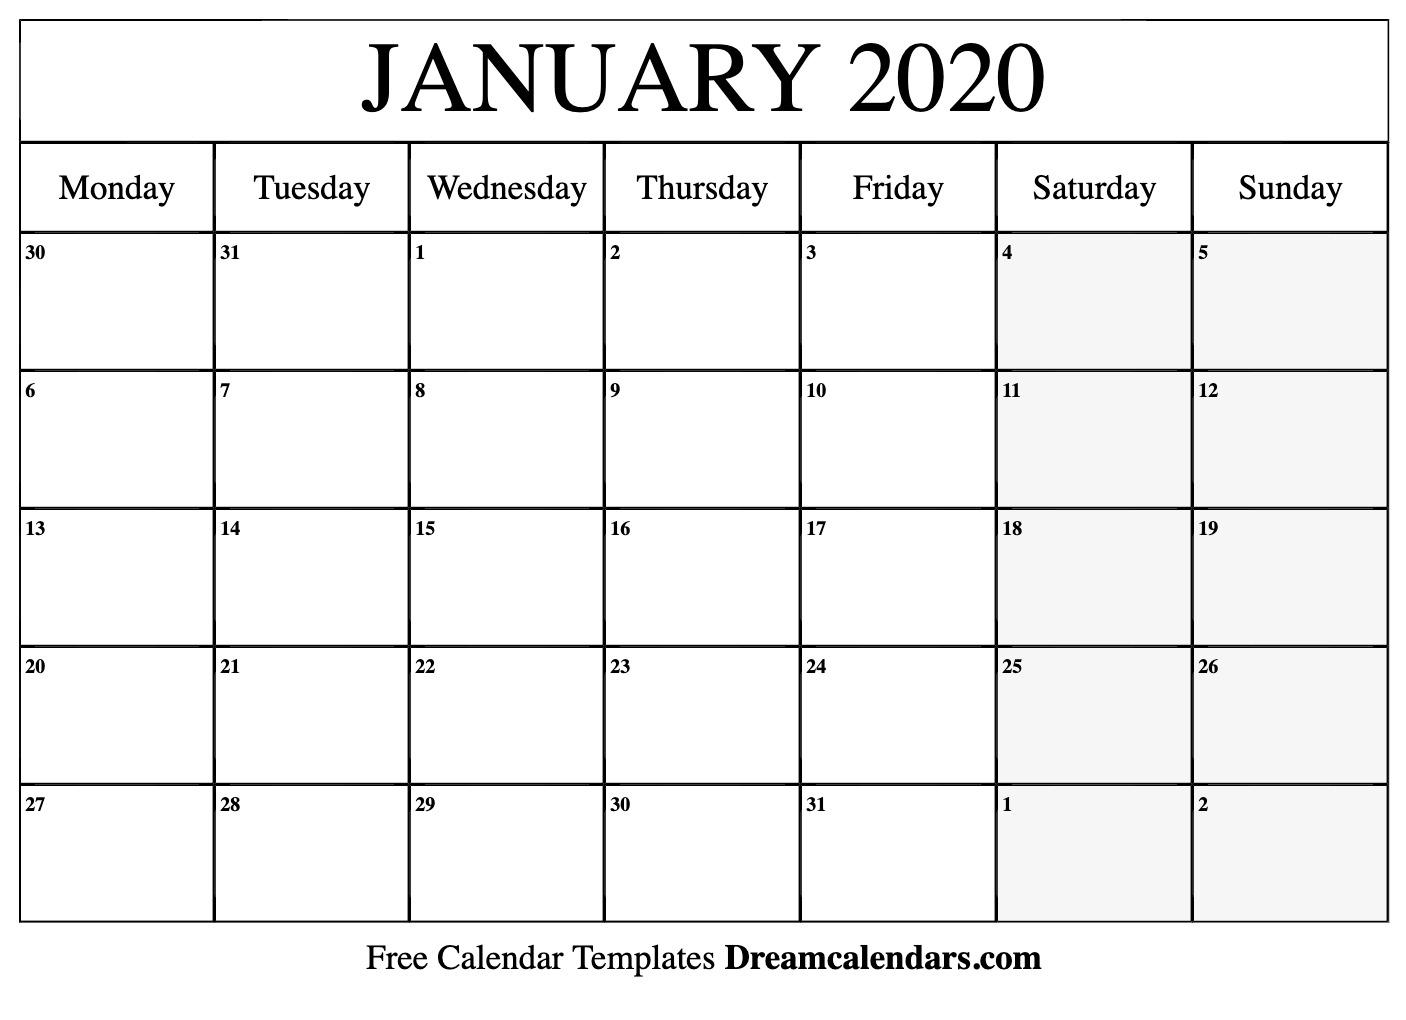 January 2020 Calendar Editable - Wpa.wpart.co